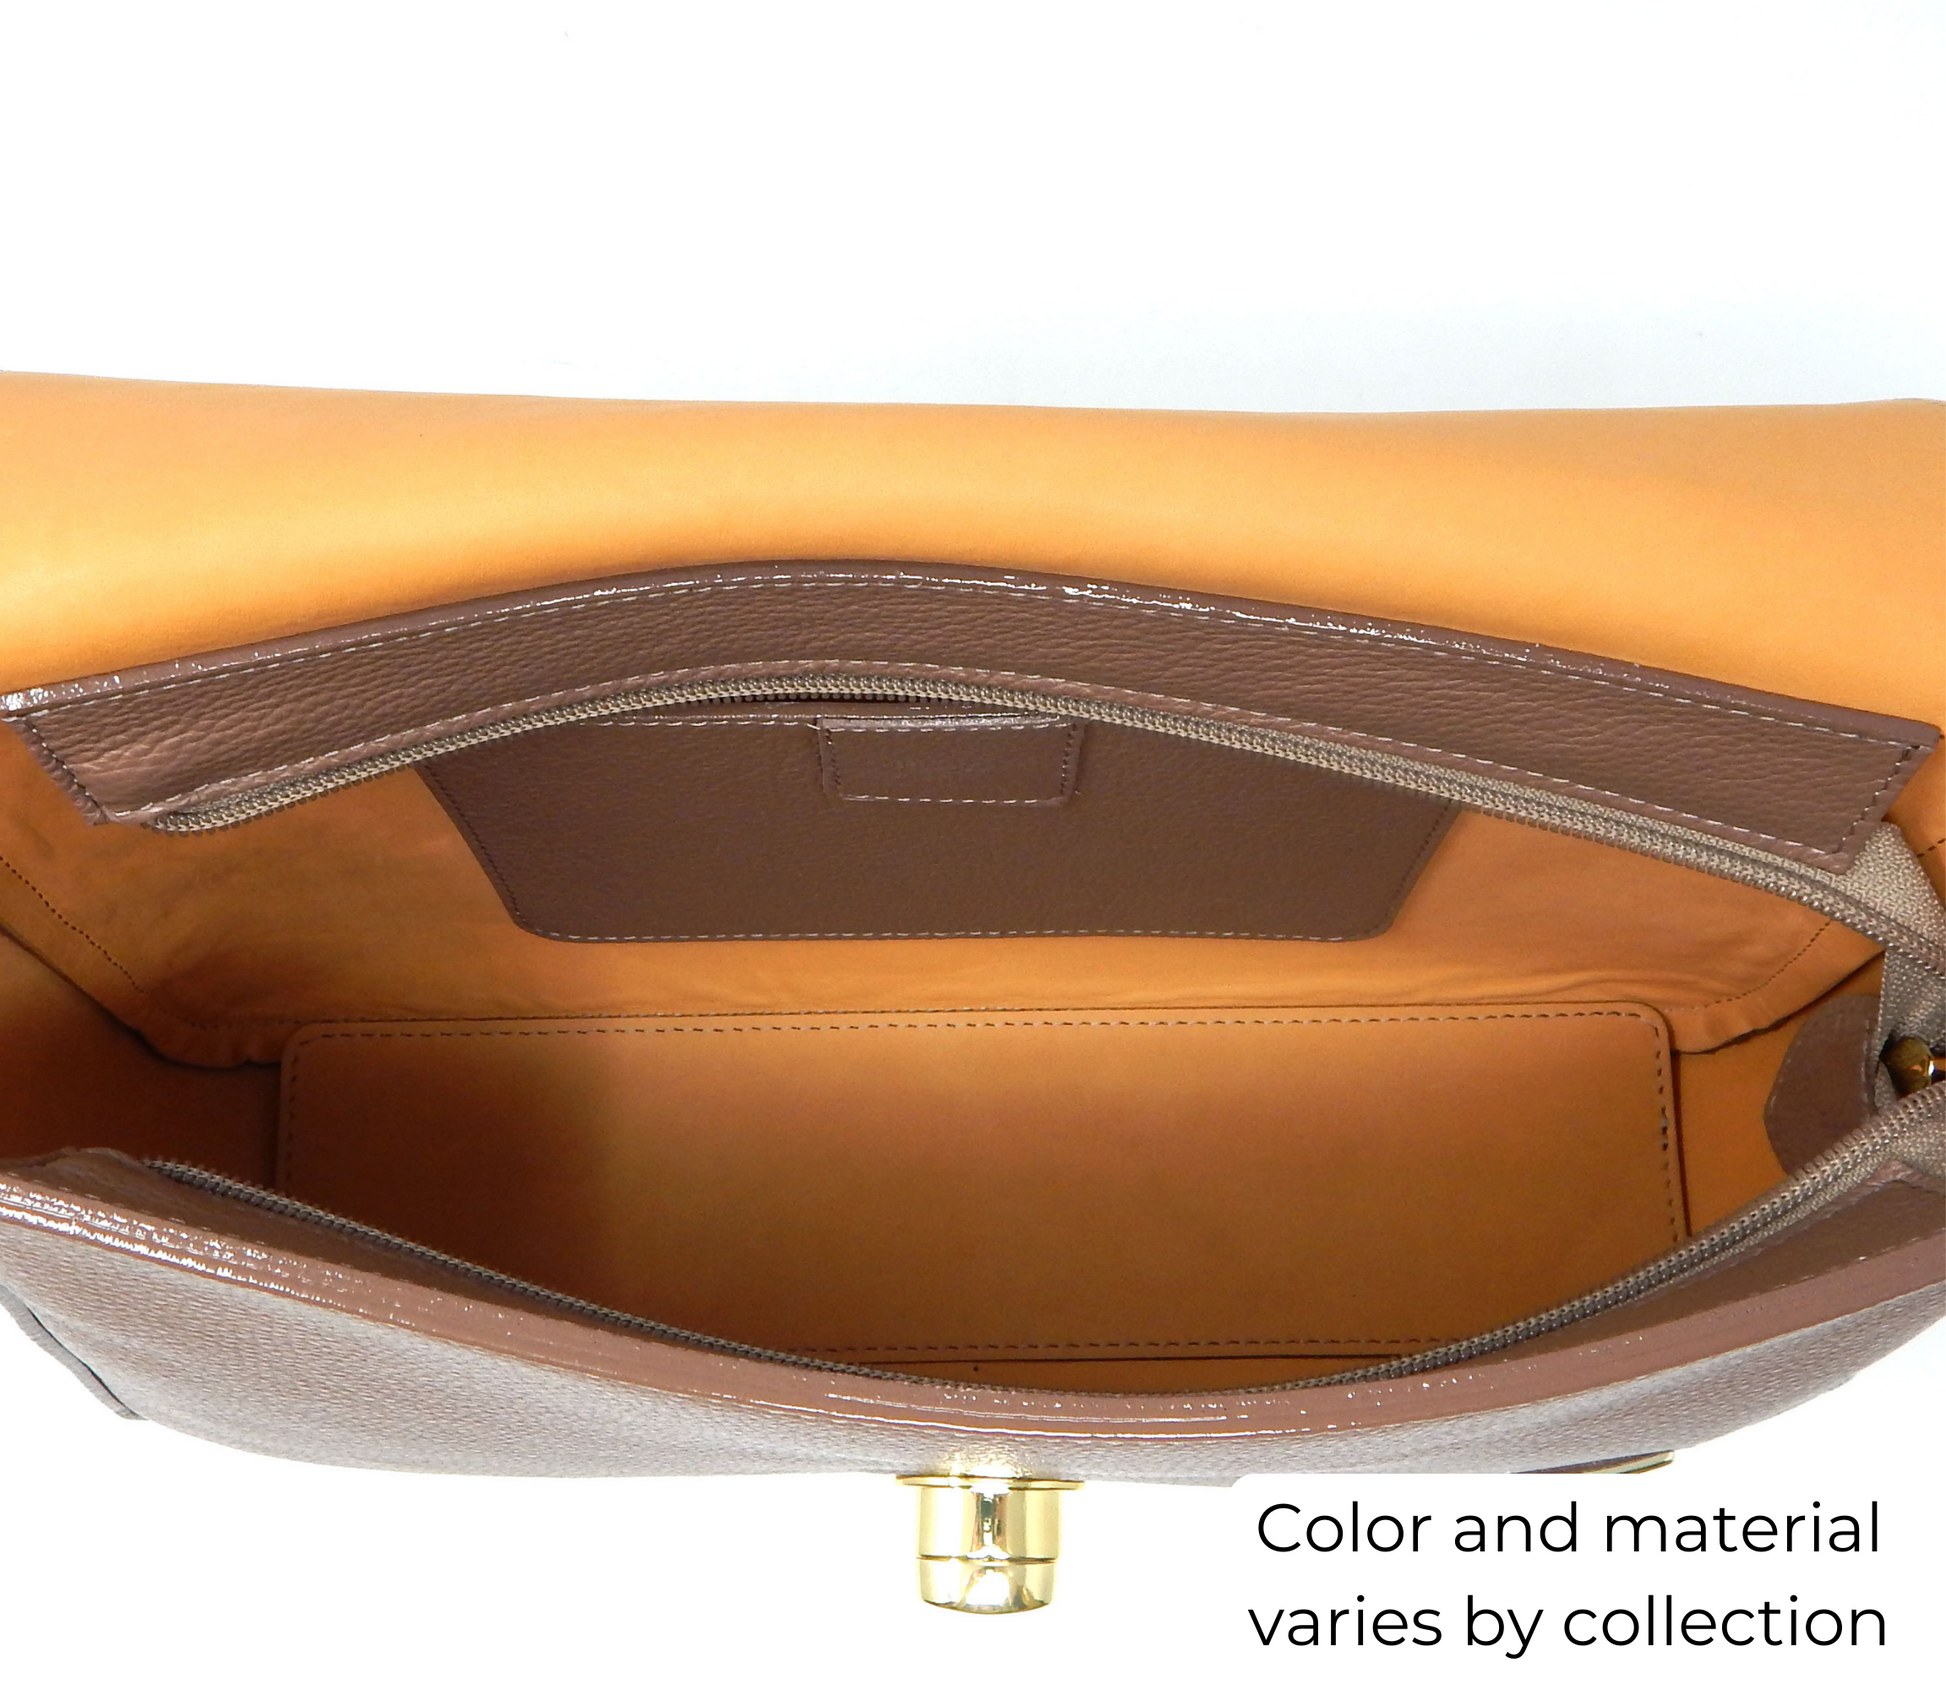 Cavalinho Muse Leather Handbag - DarkSeaGreen - inside_0515_f76baa66-21f2-4d07-b4cd-8dc5f9da5caa